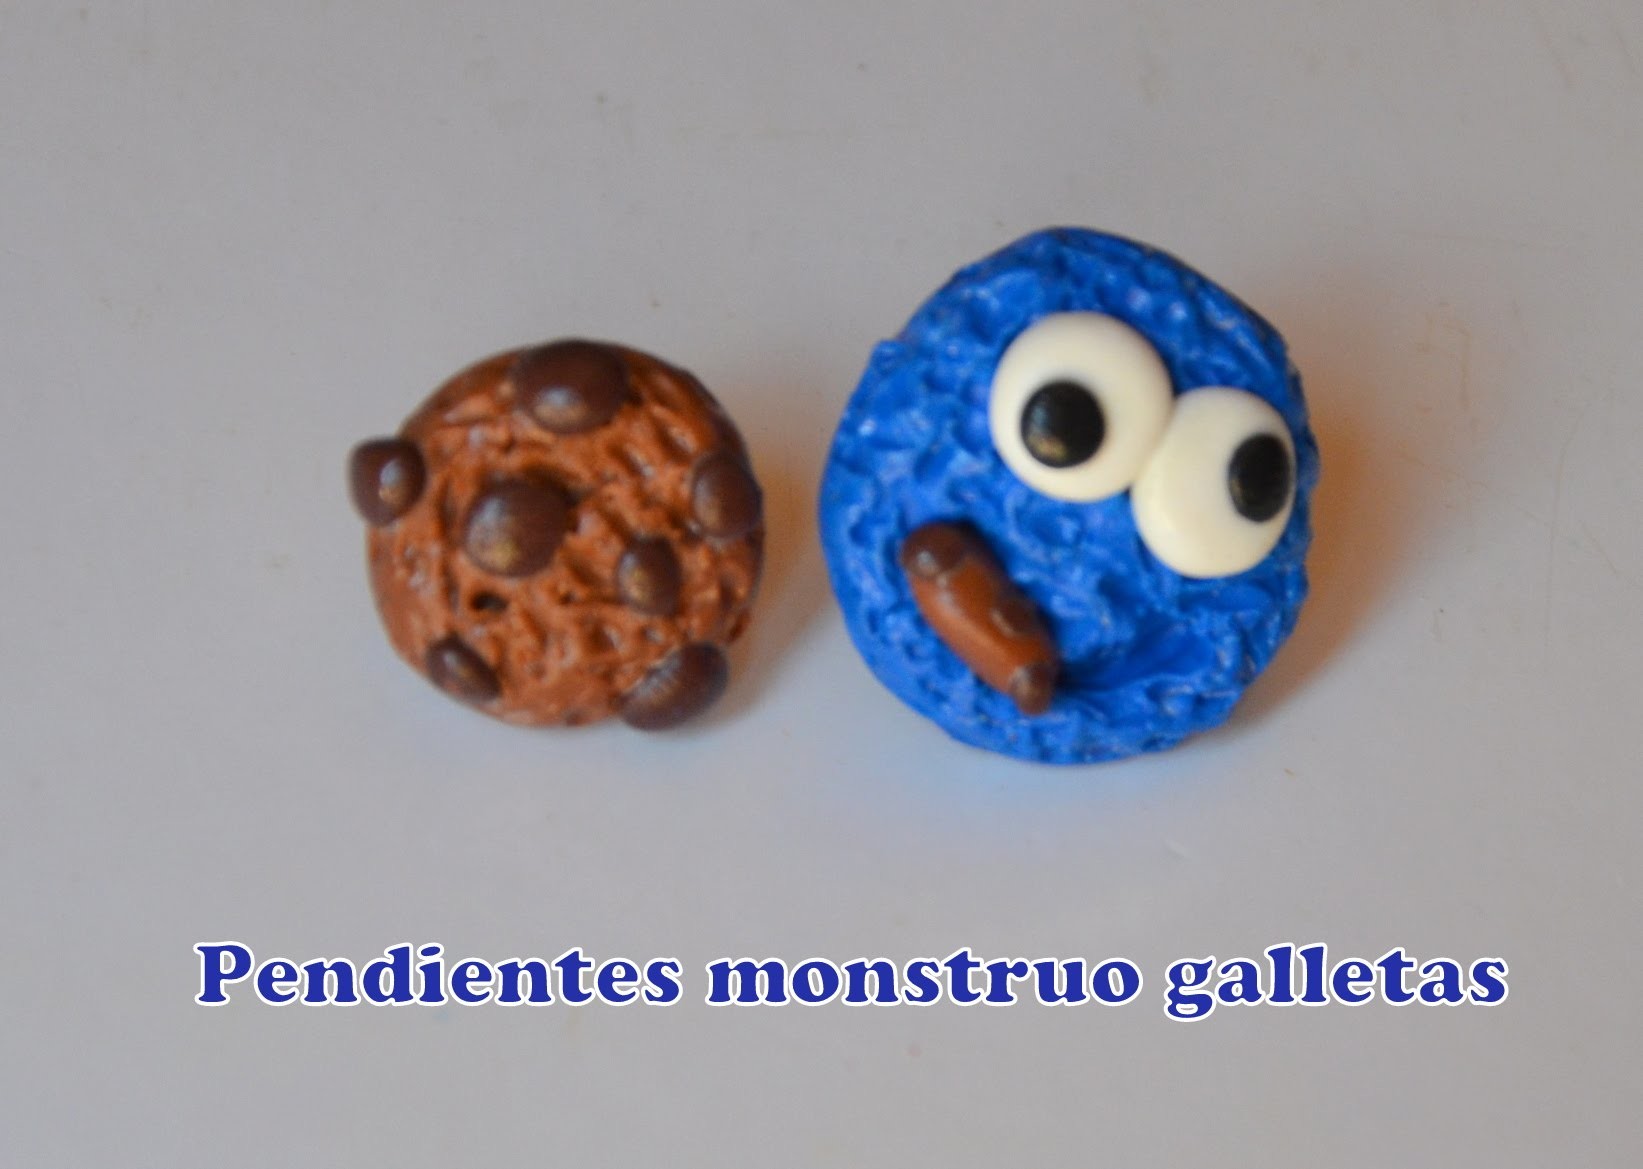 Pendientes monstruo galletas (arcilla polimerica) - Cookie monster